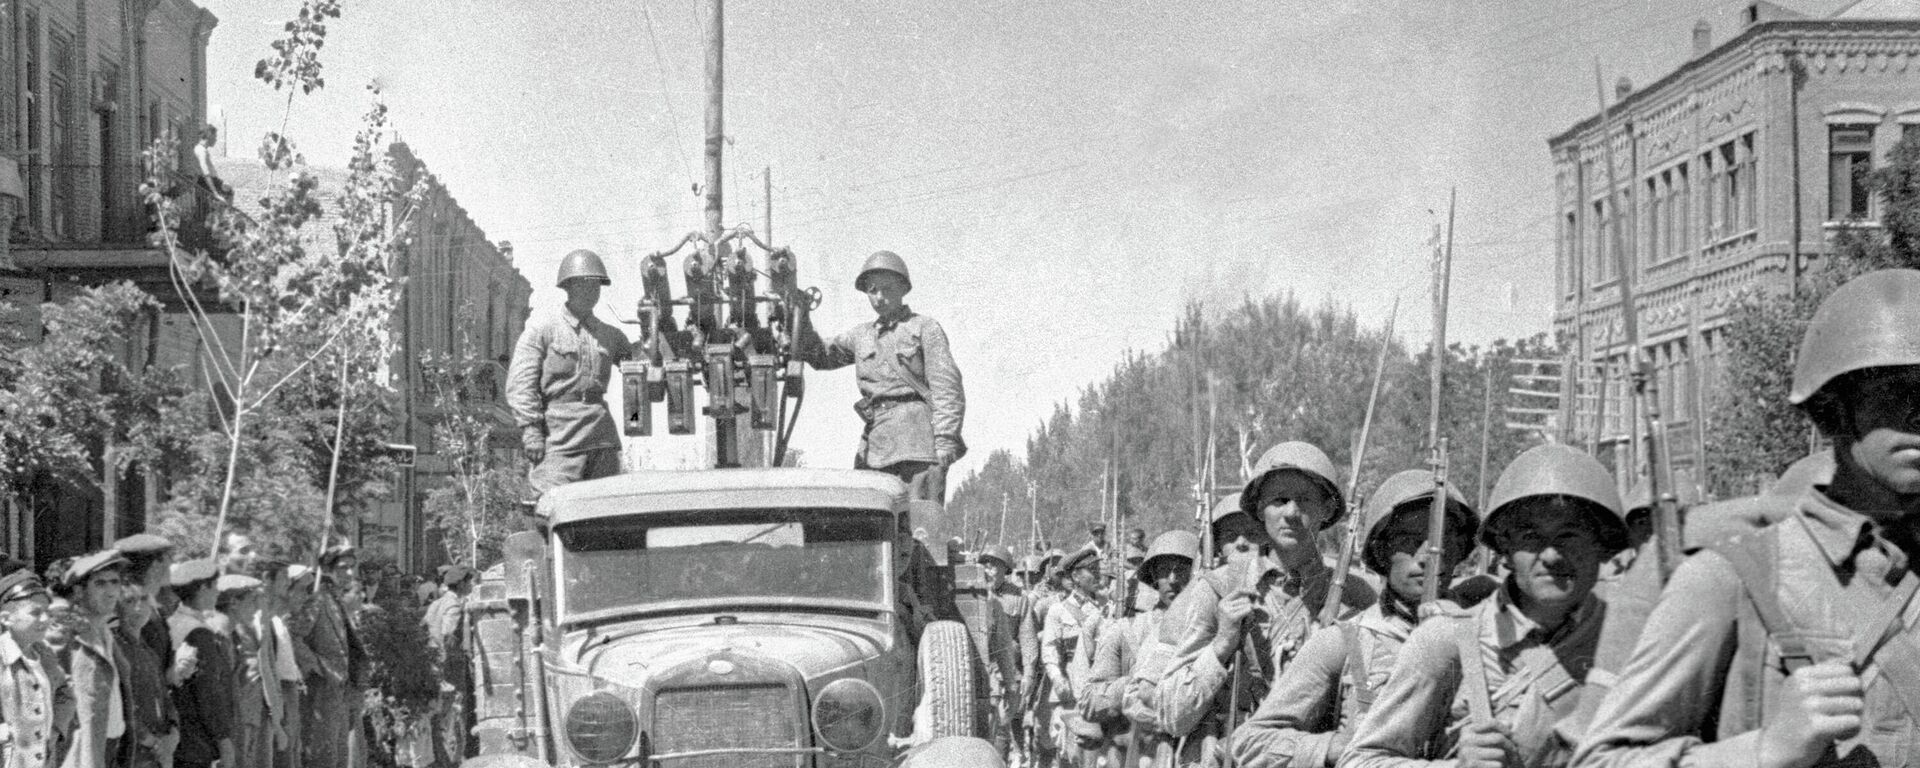 El Ejército Rojo entra en la ciudad de Tabriz, Irán - Sputnik Mundo, 1920, 16.09.2021